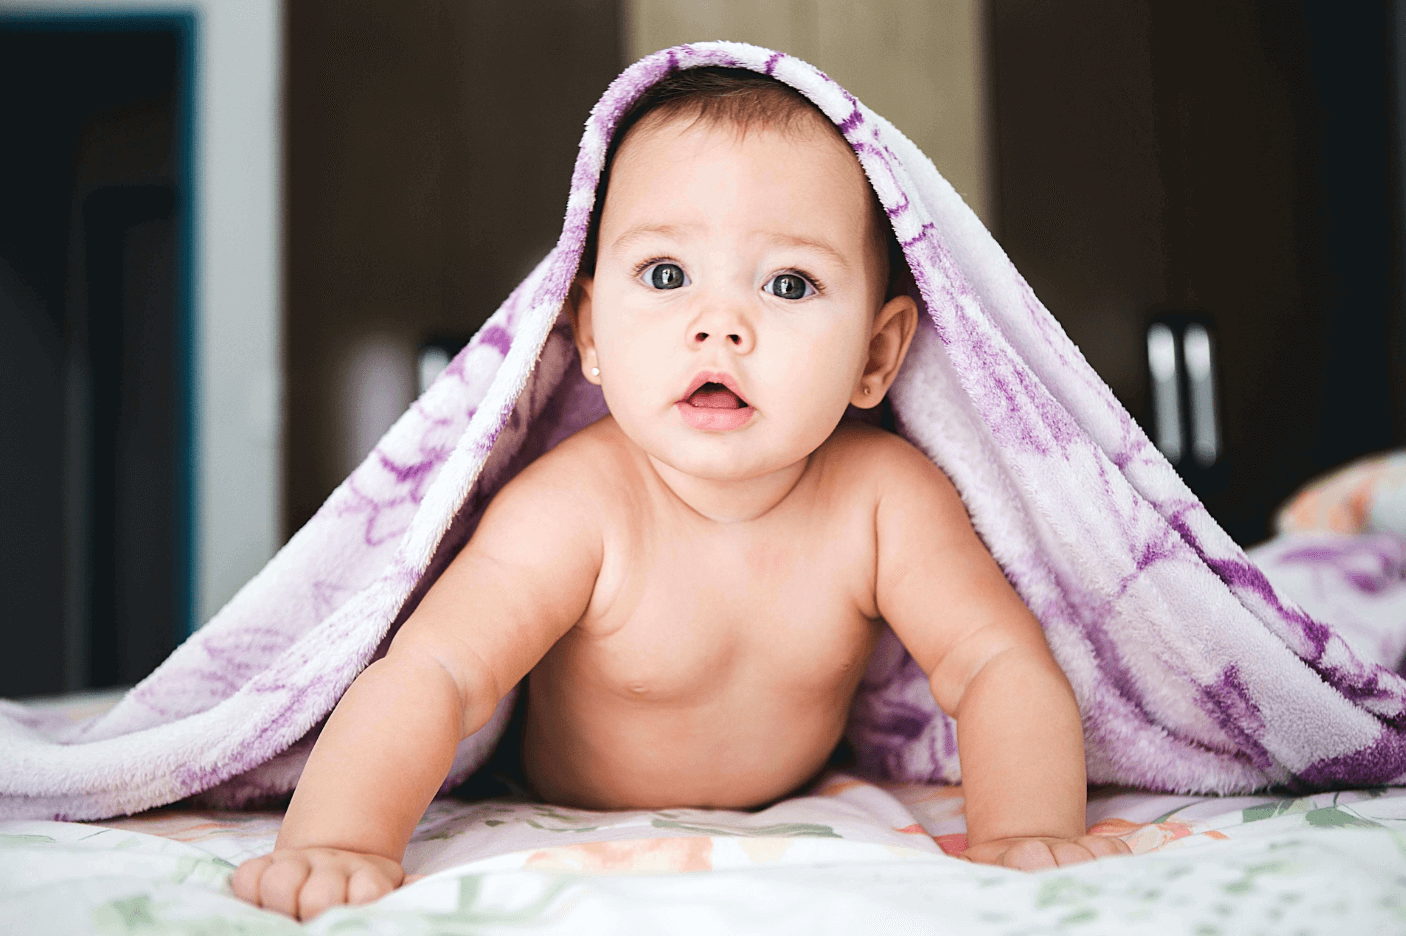 Kleinkind mit Keuchhusten Symptomen unter einer Decke